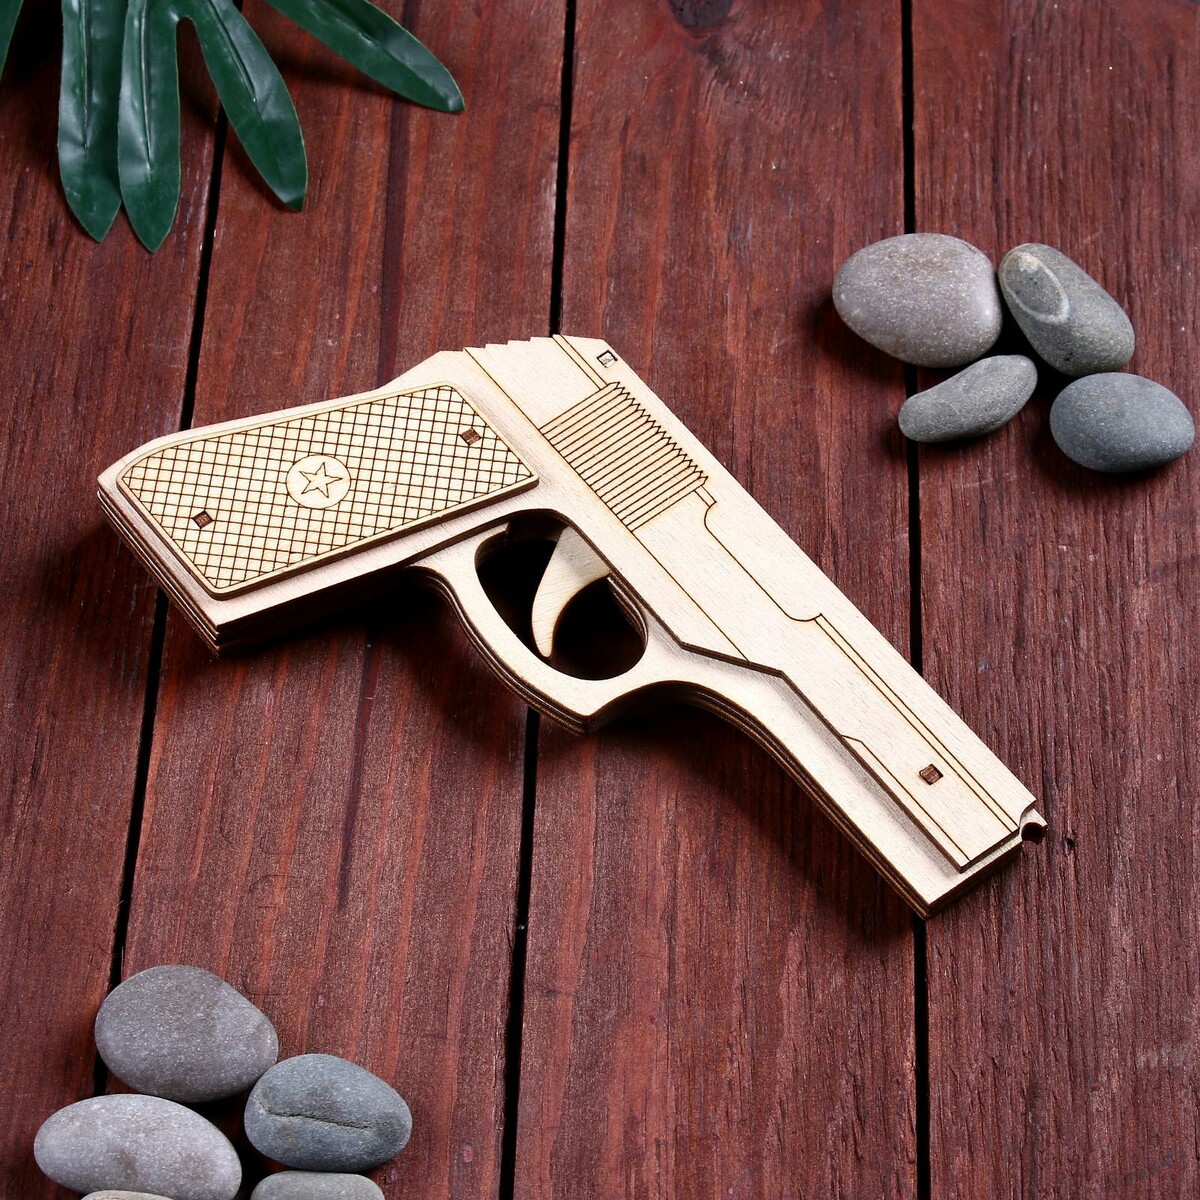 фото Сувенир деревянный пистолет резинкострел, стреляет резинками дарим красиво